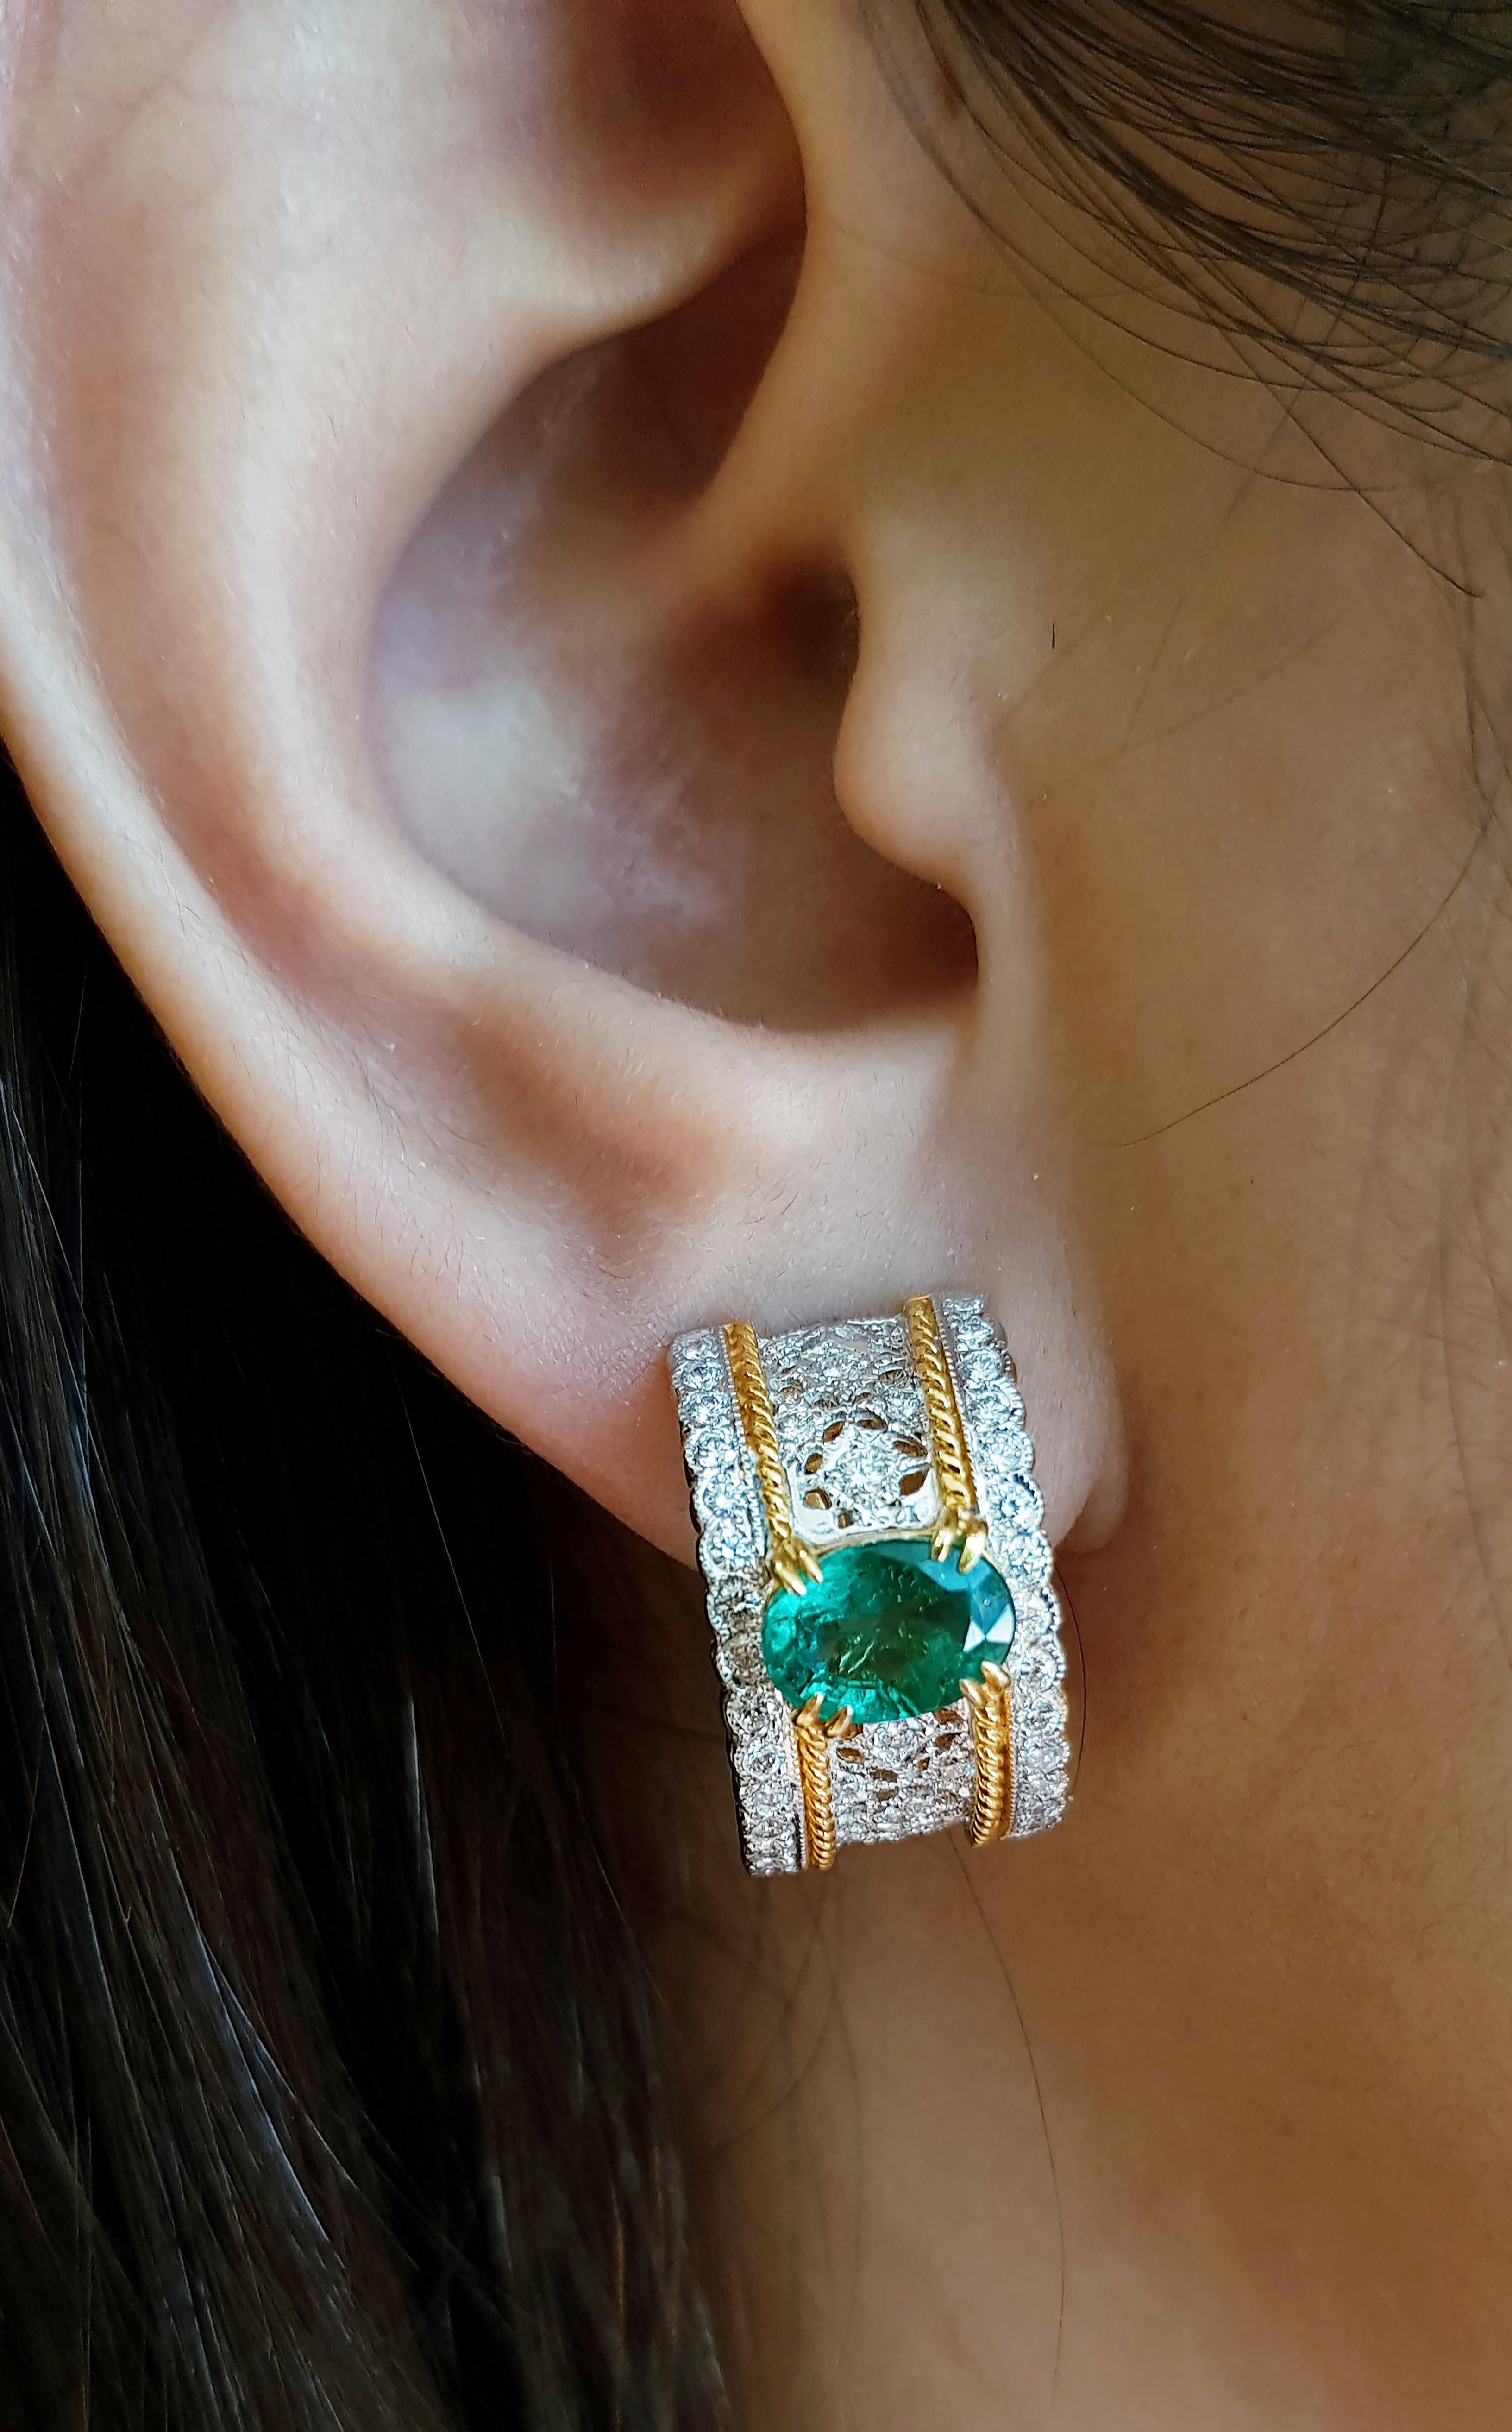 Smaragd 2,29 Karat mit Diamant 0,97 Karat Ohrringe in 18 Karat Goldfassung

Breite:  1.1 cm 
Länge: 1,9 cm
Gesamtgewicht: 10,69 Gramm

